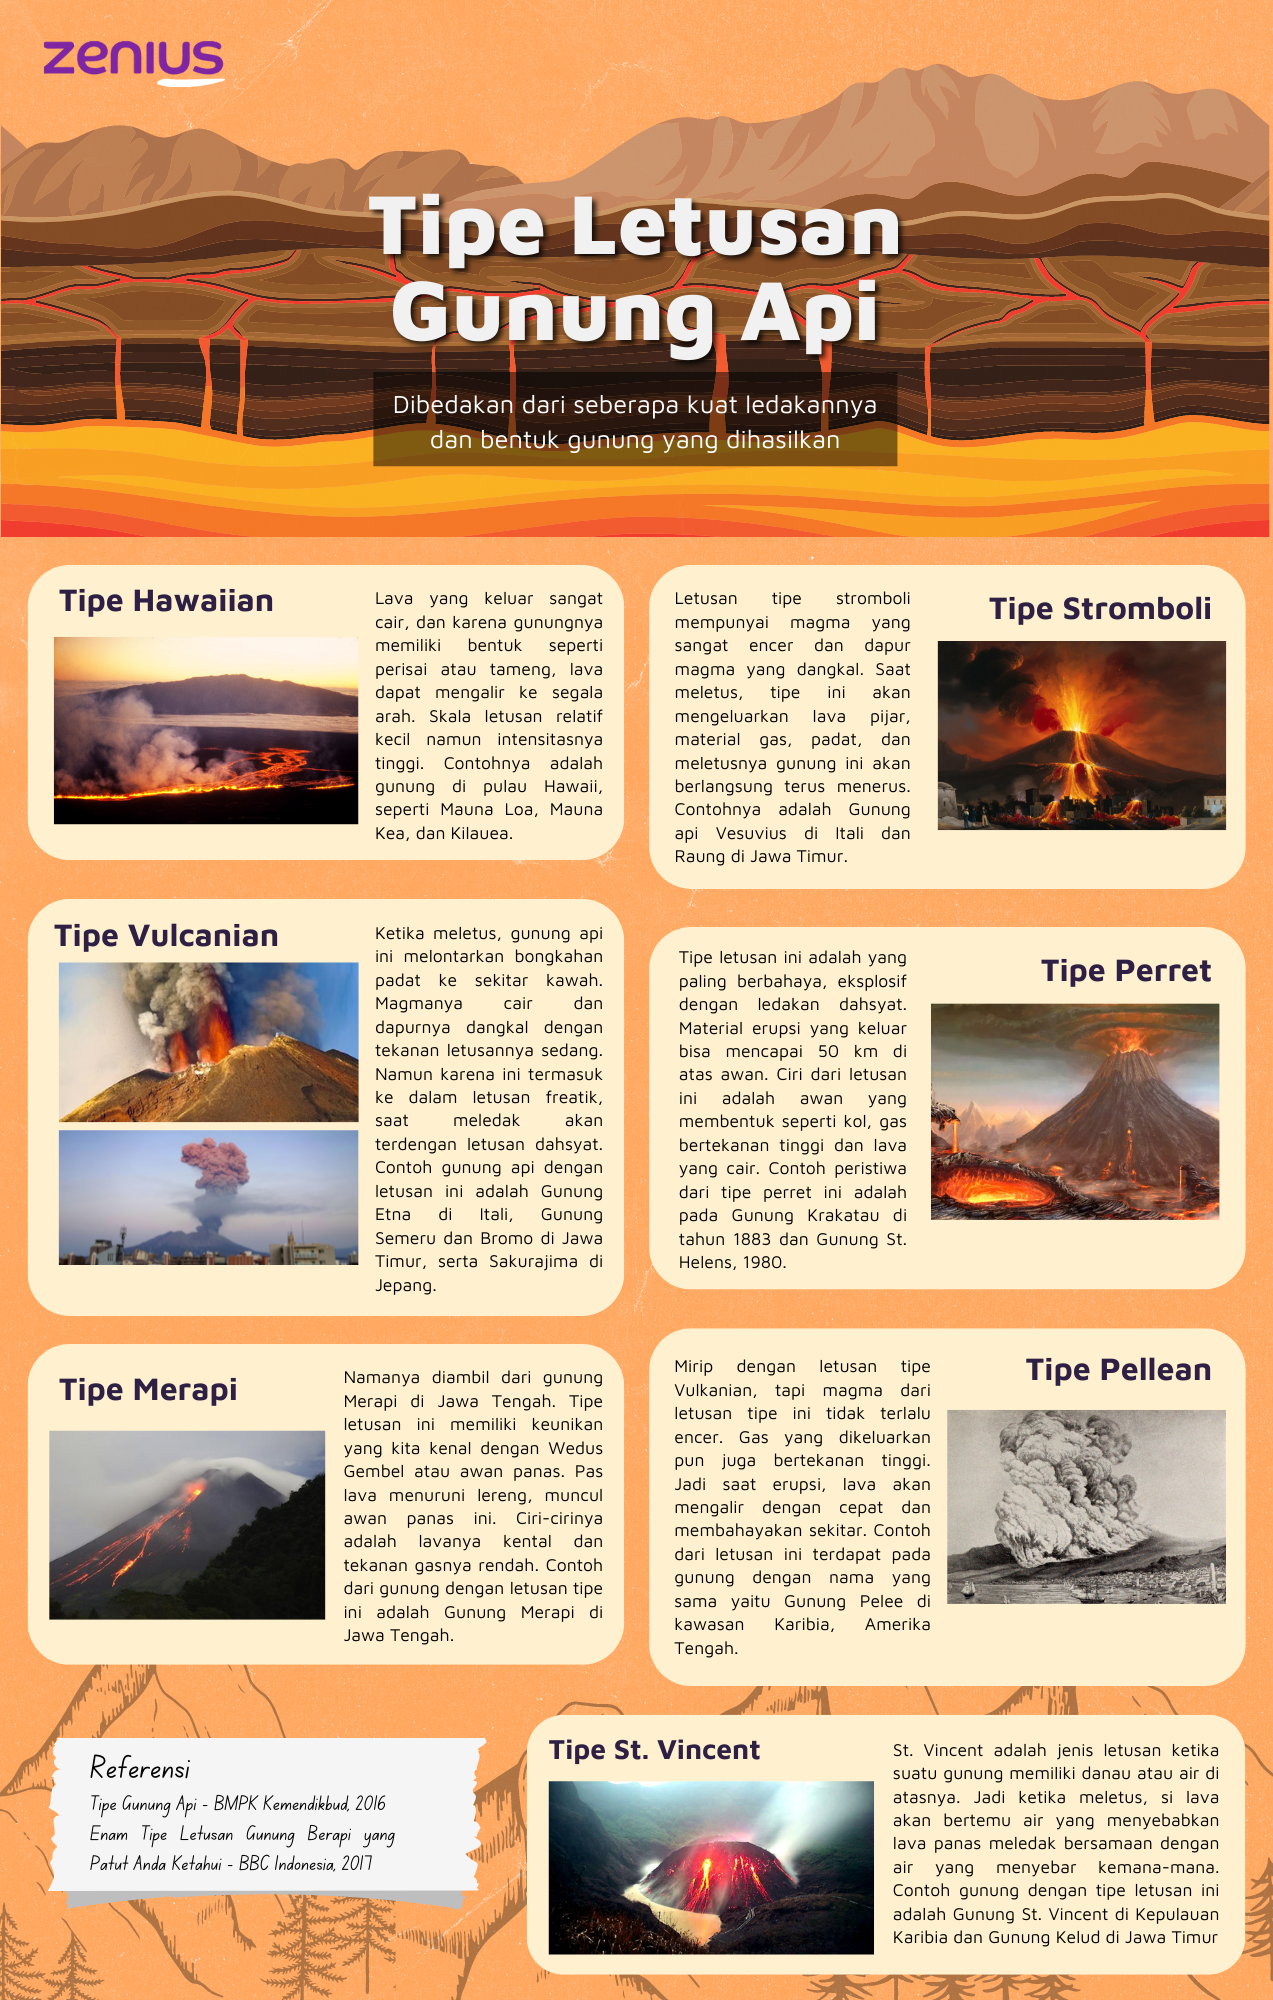 7 Tipe letusan gunung api beserta gambarnya.